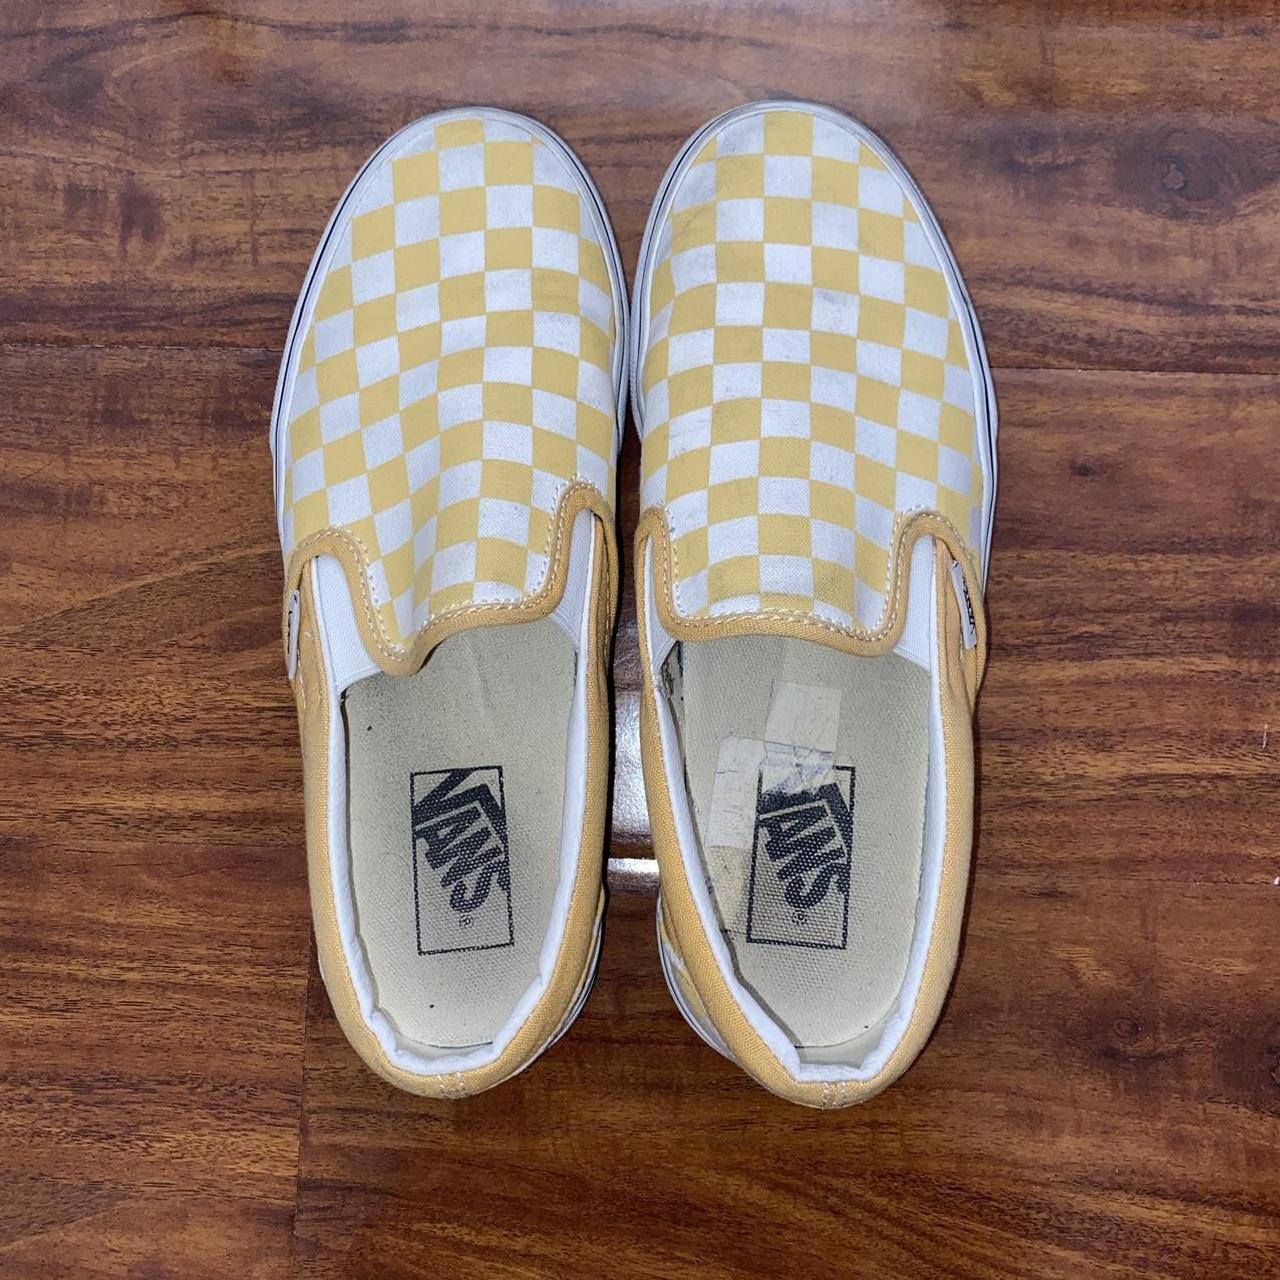 Yellow Checkered Slip On Vans